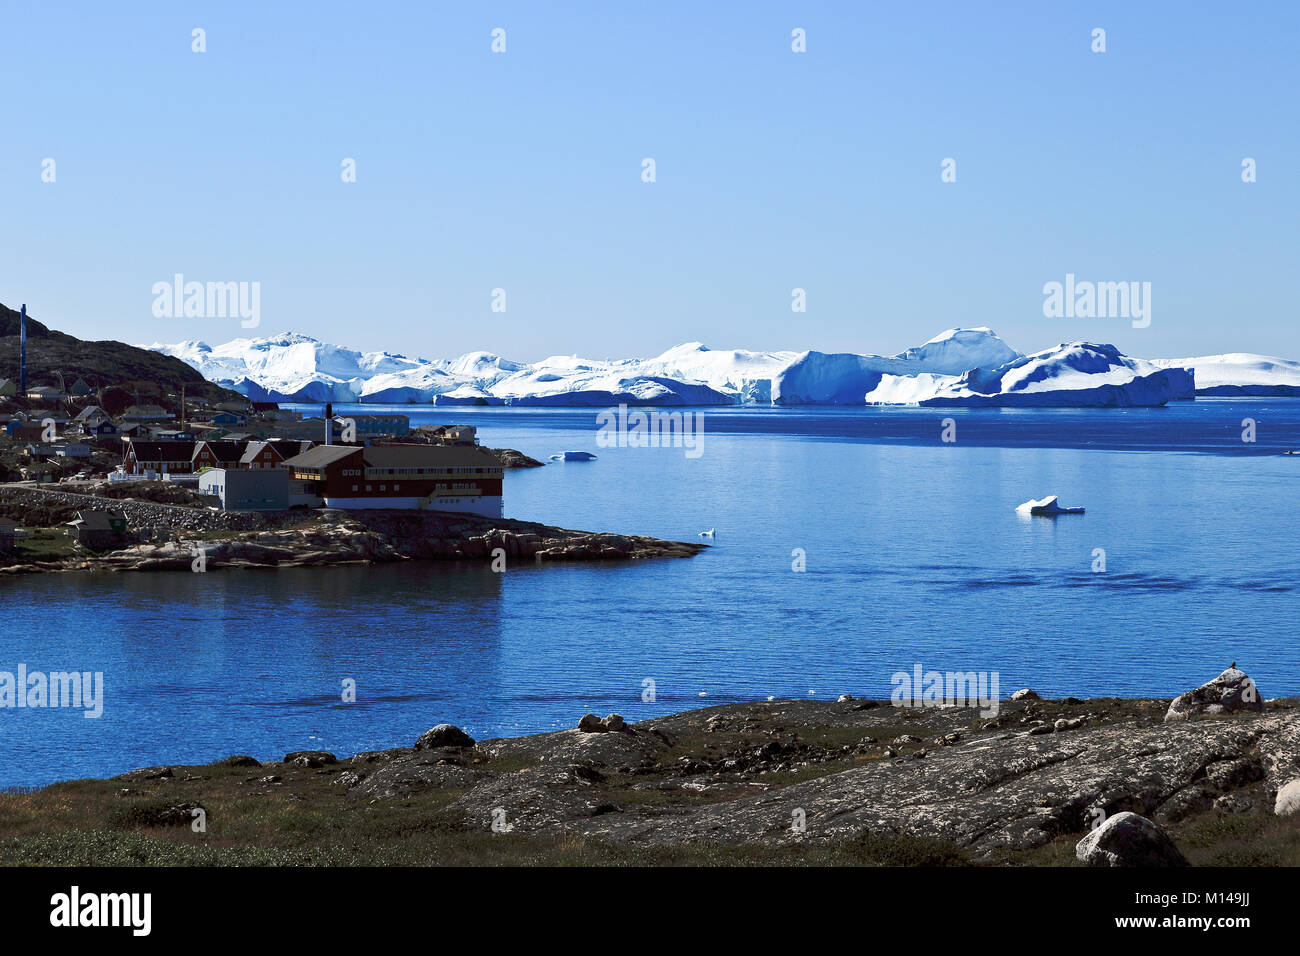 Eisberge schwimmen im Wasser in der Nähe der Stadt Ilulissat früher Jakobshavn oder Jacobshaven, westlichen Grönland Stockfoto